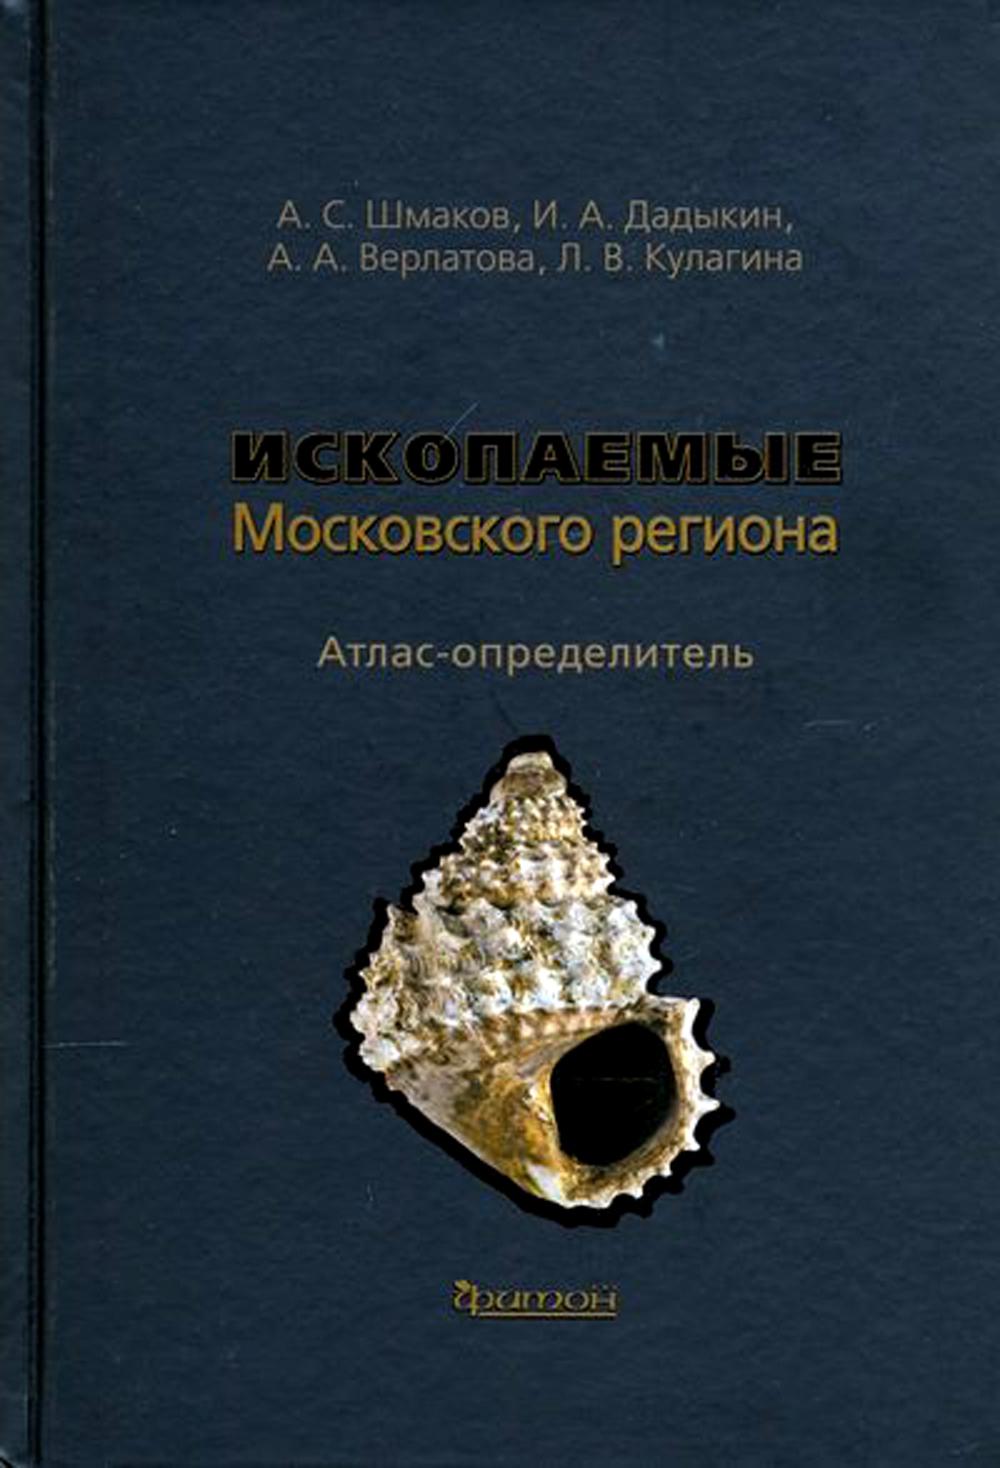 фото Книга атлас-определитель ископаемые московского региона фитон xxi